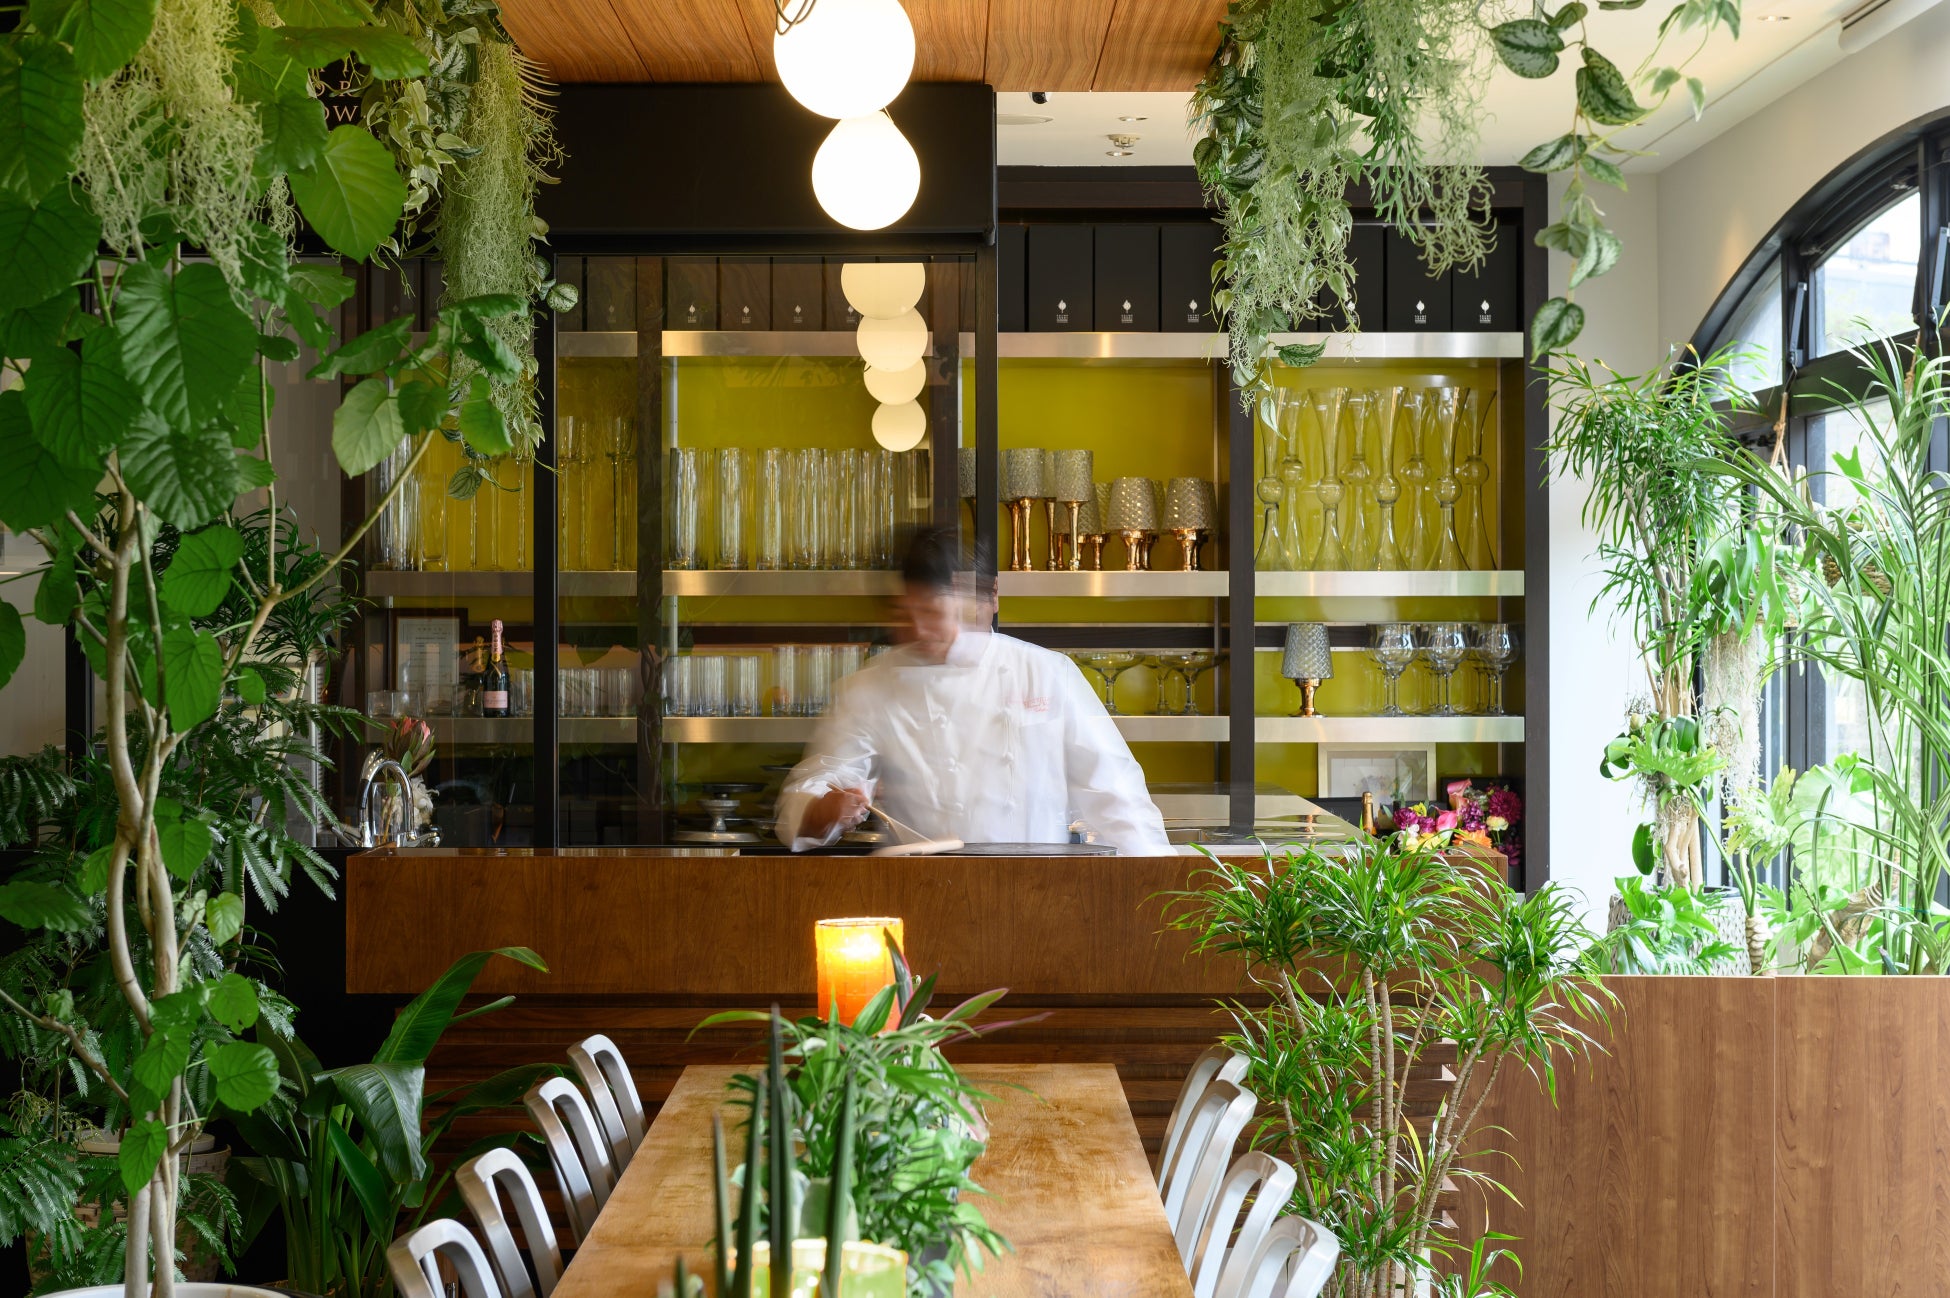 グリーンあふれる店内と開放感たっぷりのテラスでペットと一緒に楽しむガレット＆クレープ専門店「MARINA CAFÉ」リニューアルオープン